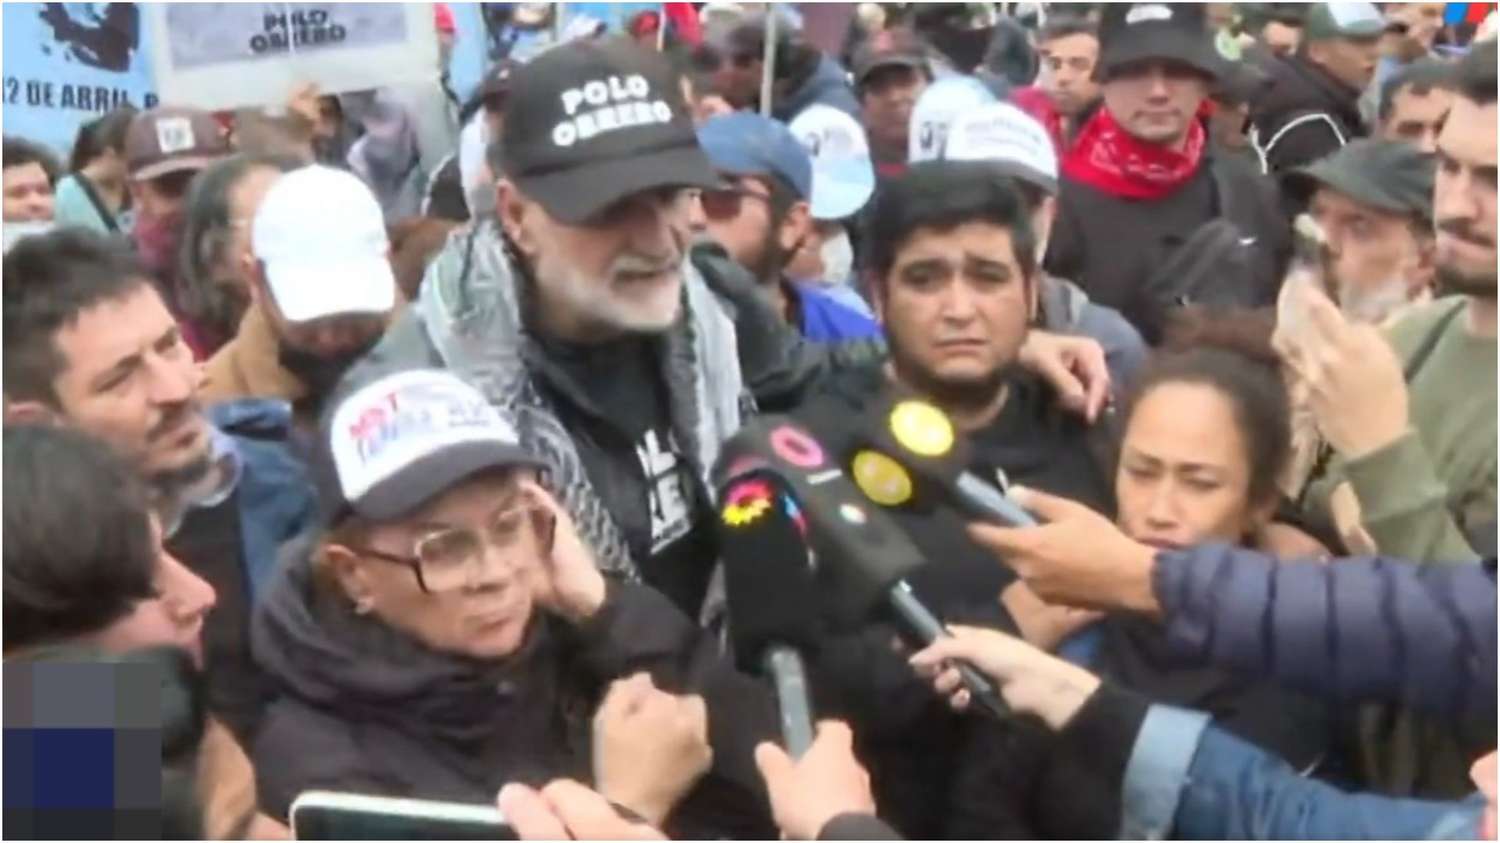 Marcha piquetera y tensión en Olivos: "Hace 5 meses no hay comida en comedores", dijo Belliboni al repudiar el operativo